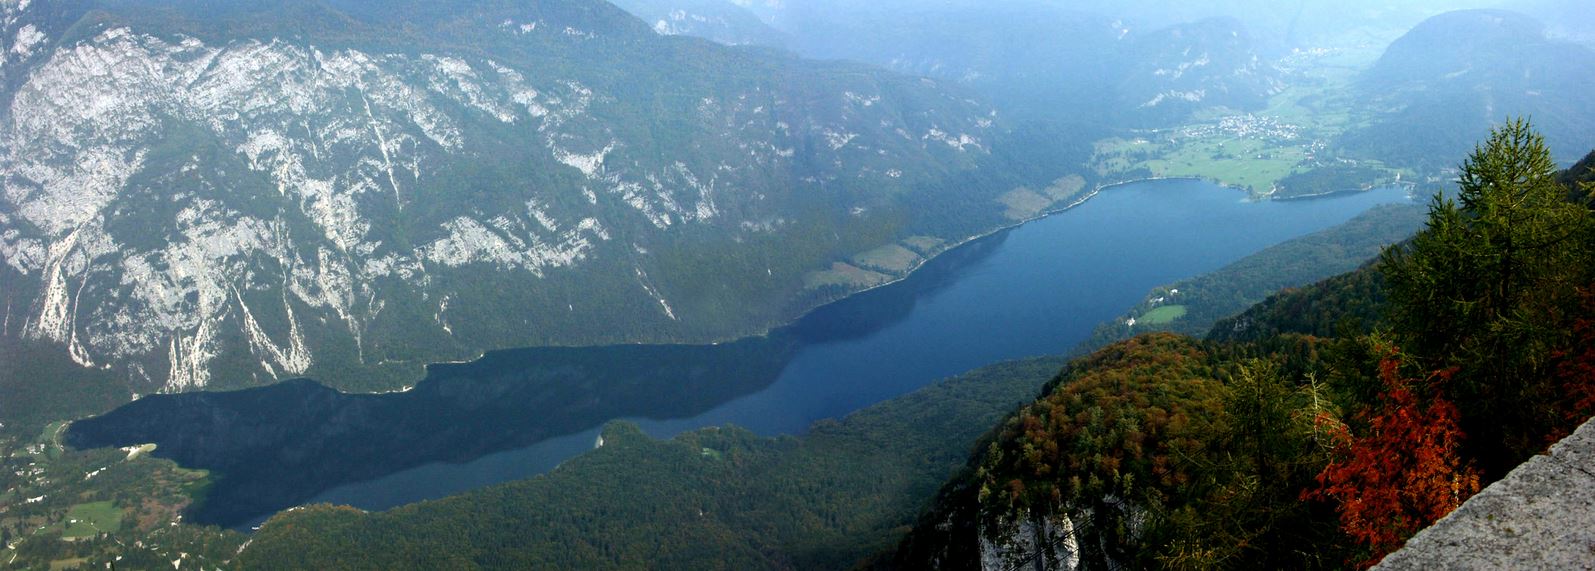 Бохиньское озеро с высоты птичьего полёта